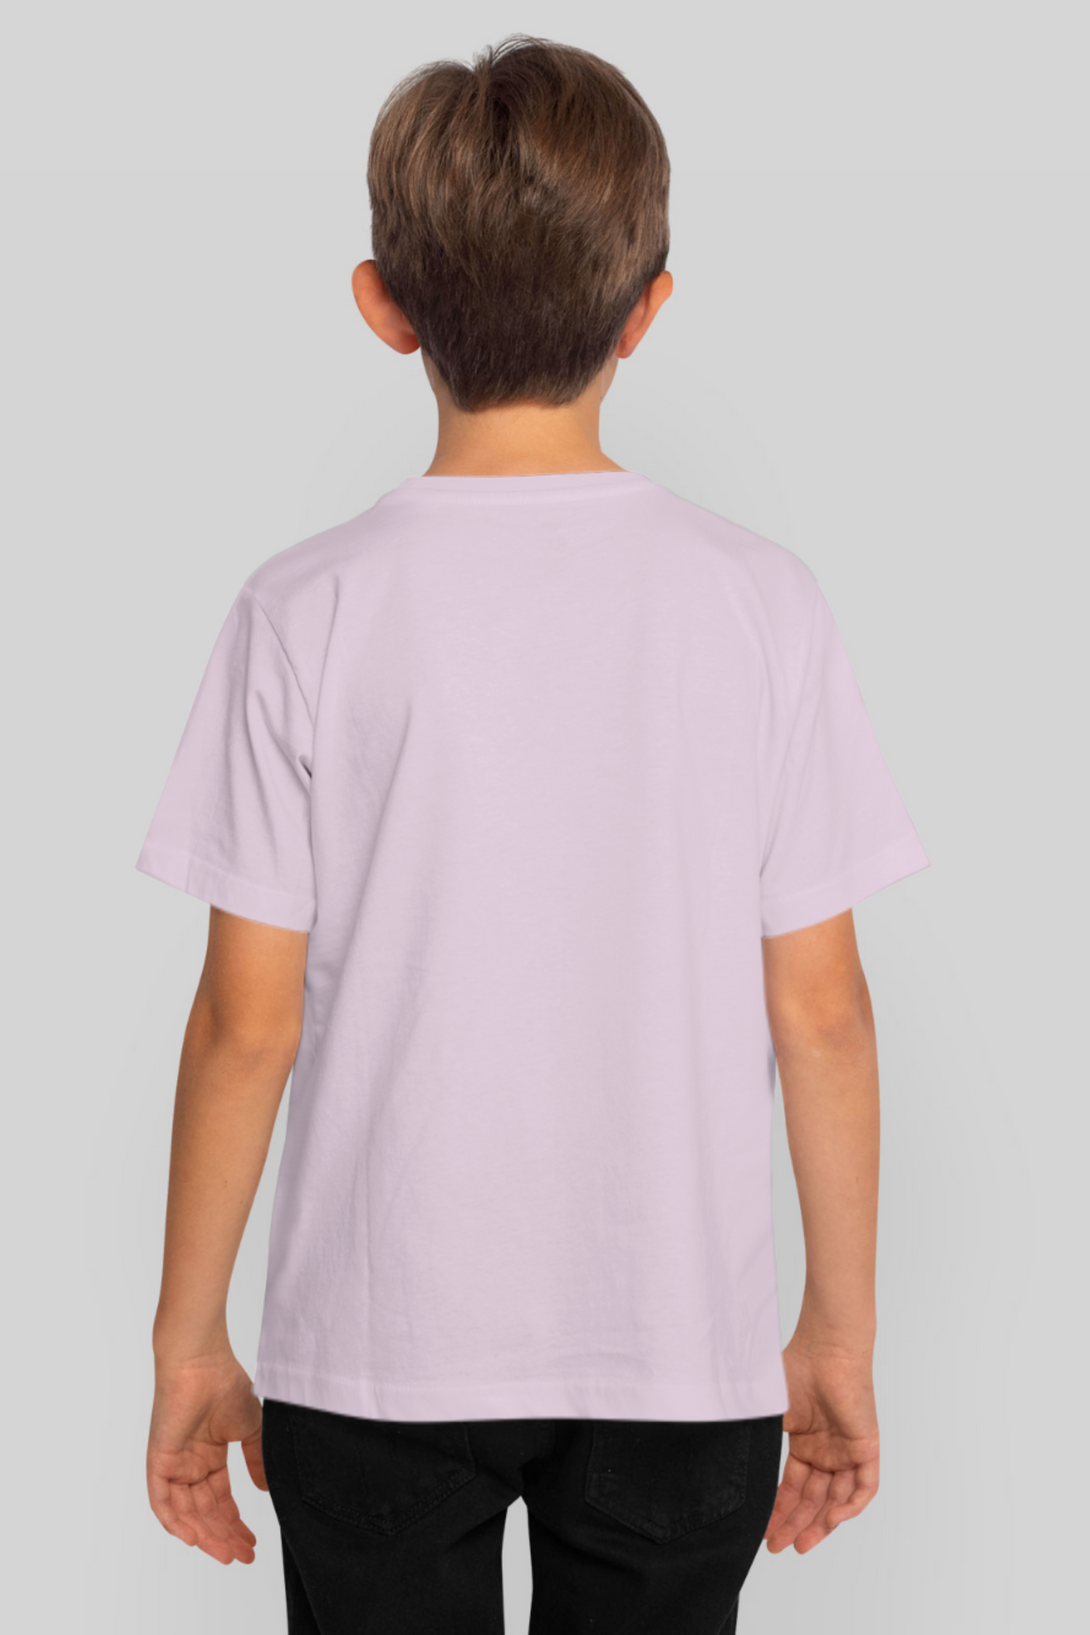 Light Pink T-Shirt For Boy - WowWaves - 2